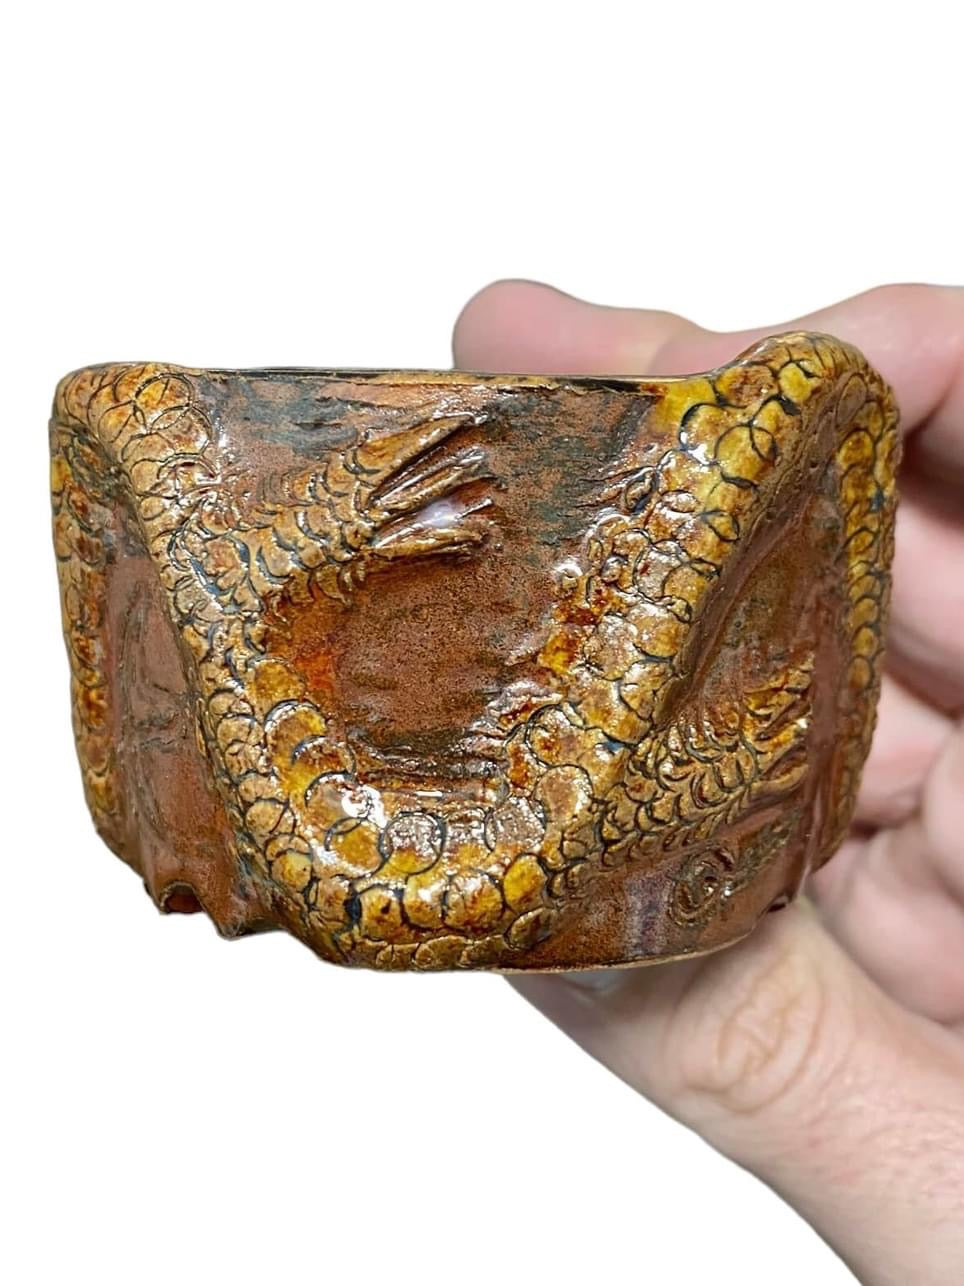 Takudo - Glazed Dragon Mame Bonsai or Accent Pot